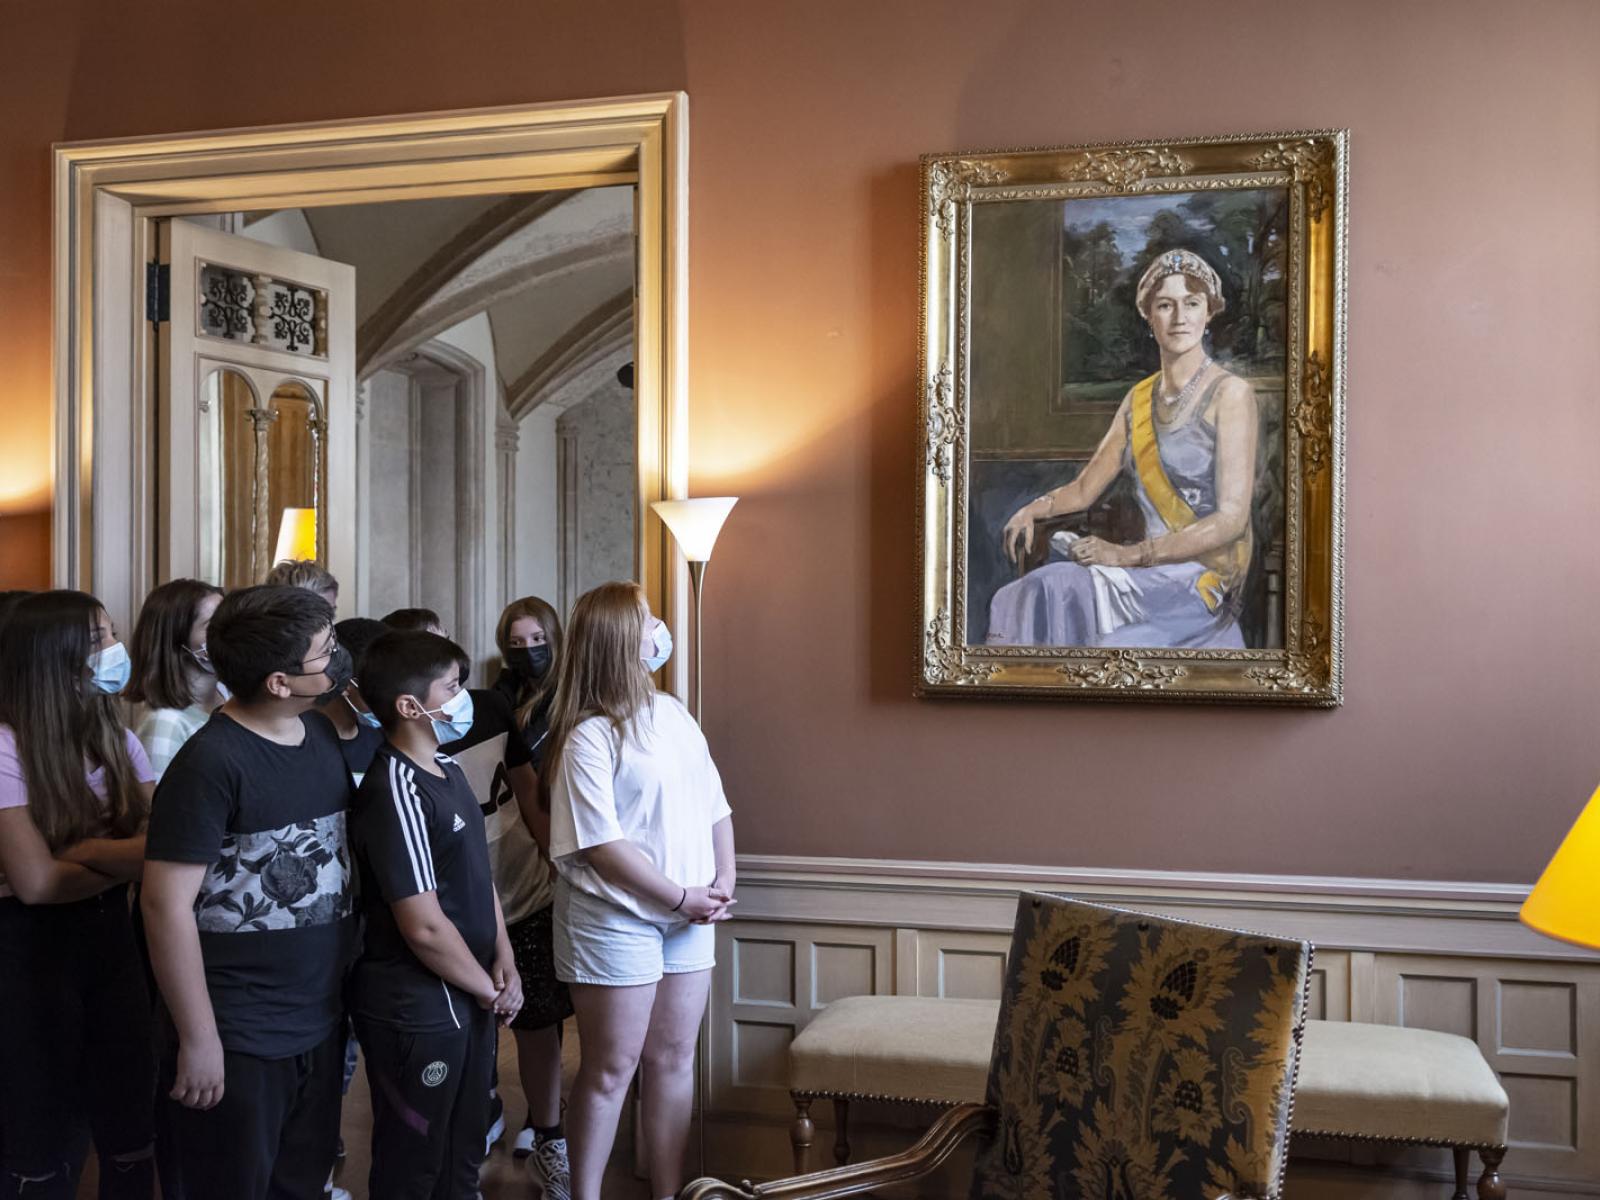 Les élèves observent le portrait de la Grande-Duchesse Charlotte dans la petite salle d'armes